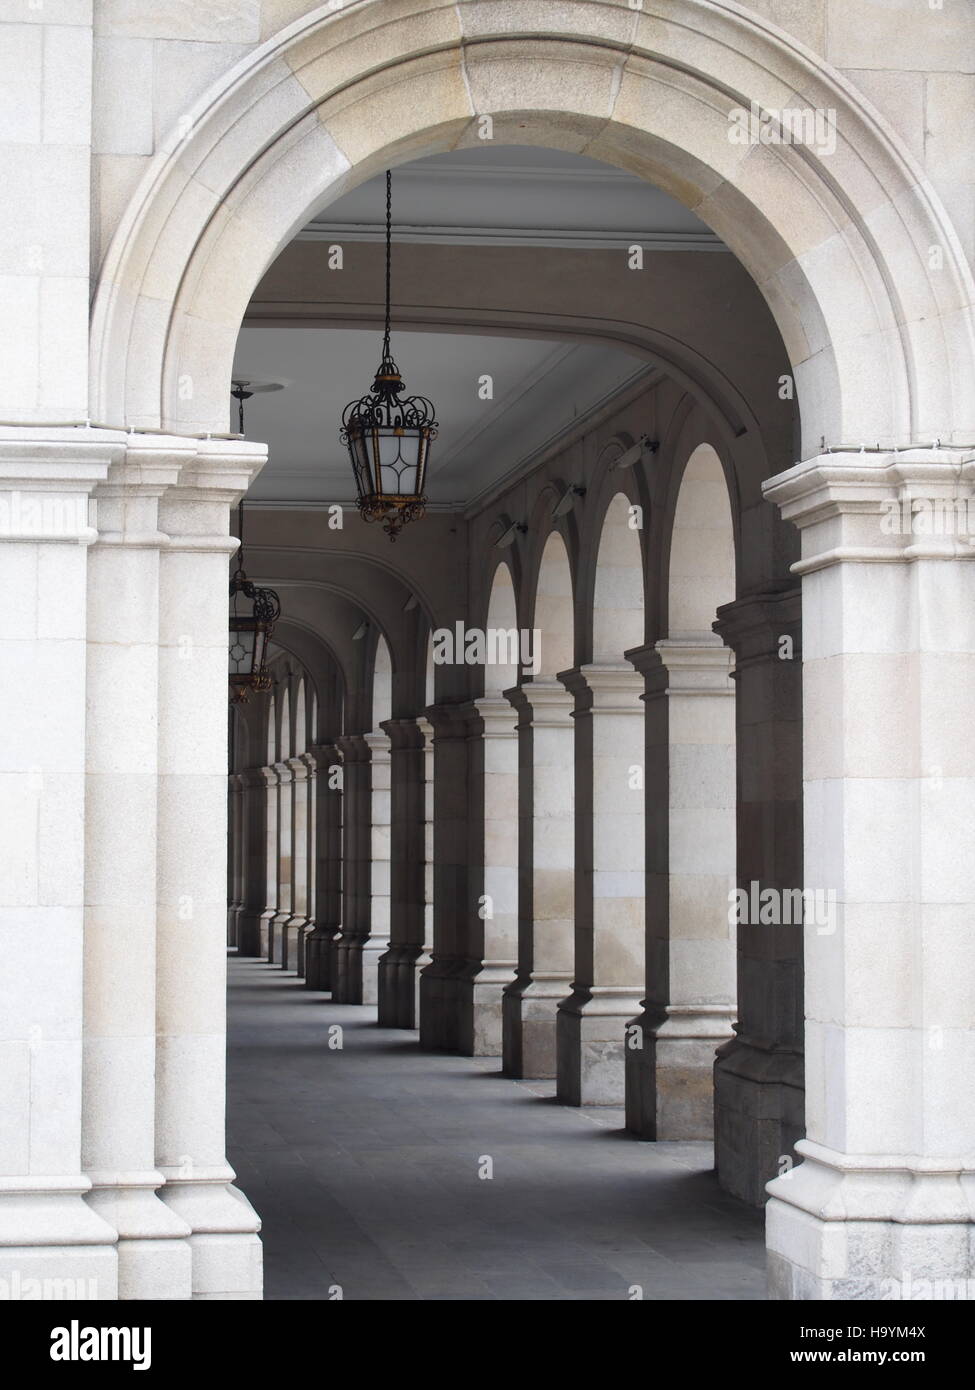 Pasarela arqueada, galería claustro o columnata en la parte delantera del Ayuntamiento de La Coruña, Galicia, España, con pilares, arcos y lámpara colgante o linternas Foto de stock